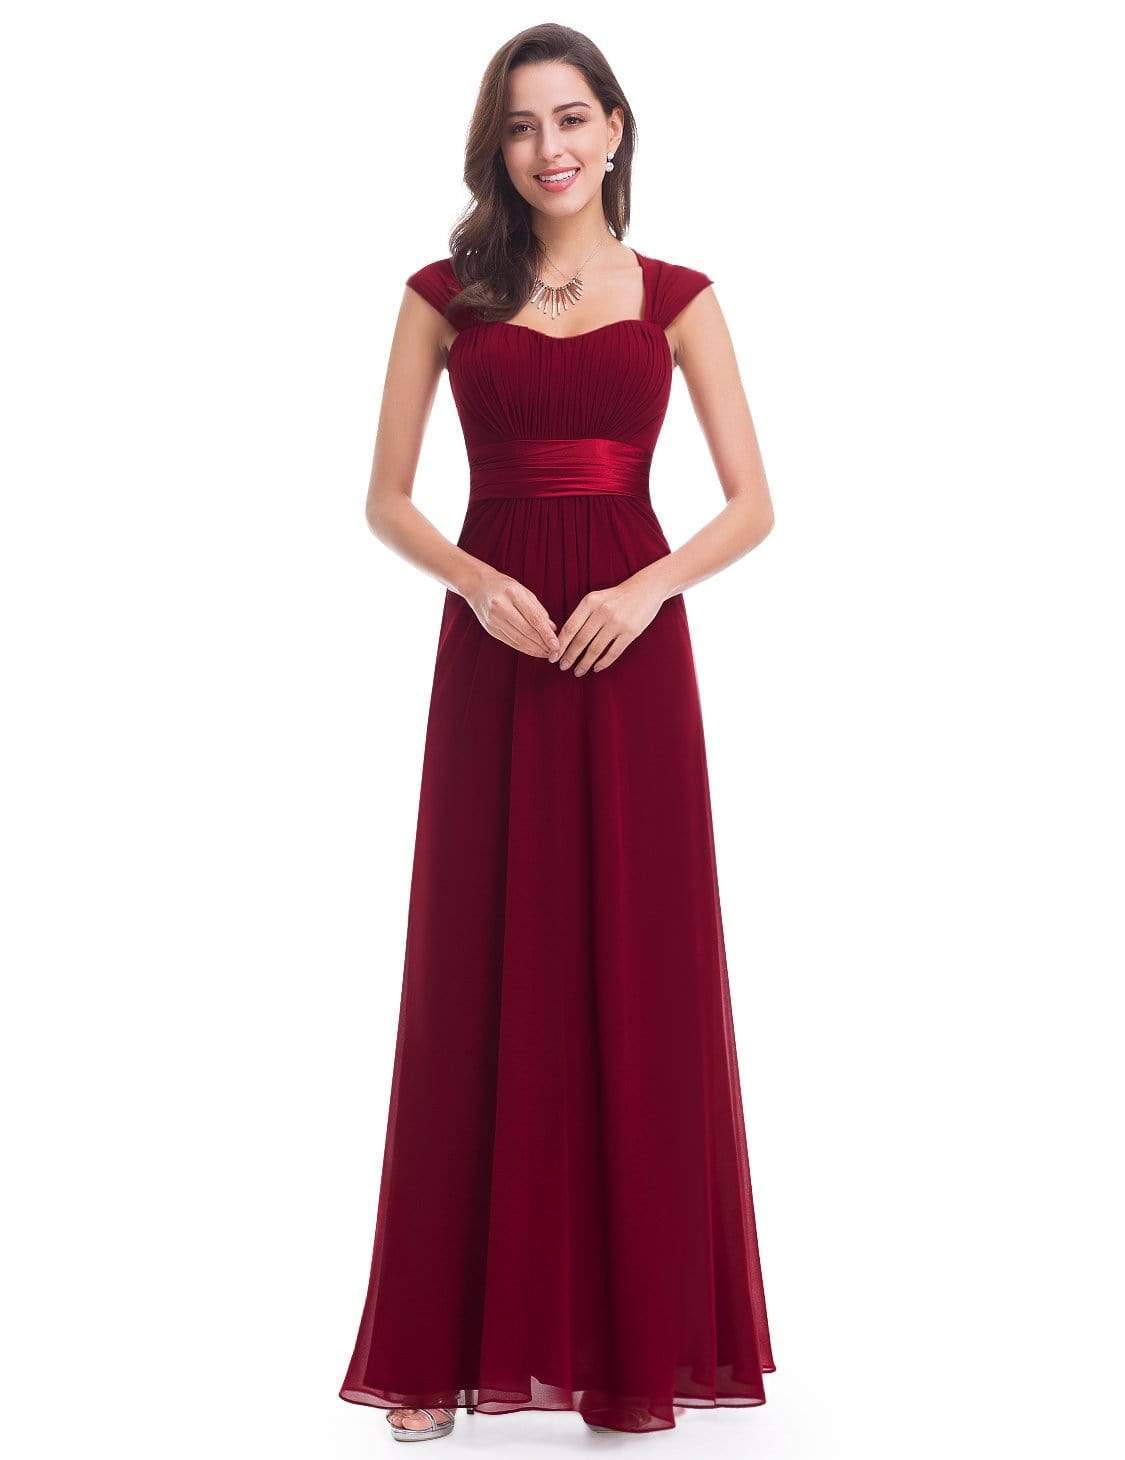 empire waist red dress